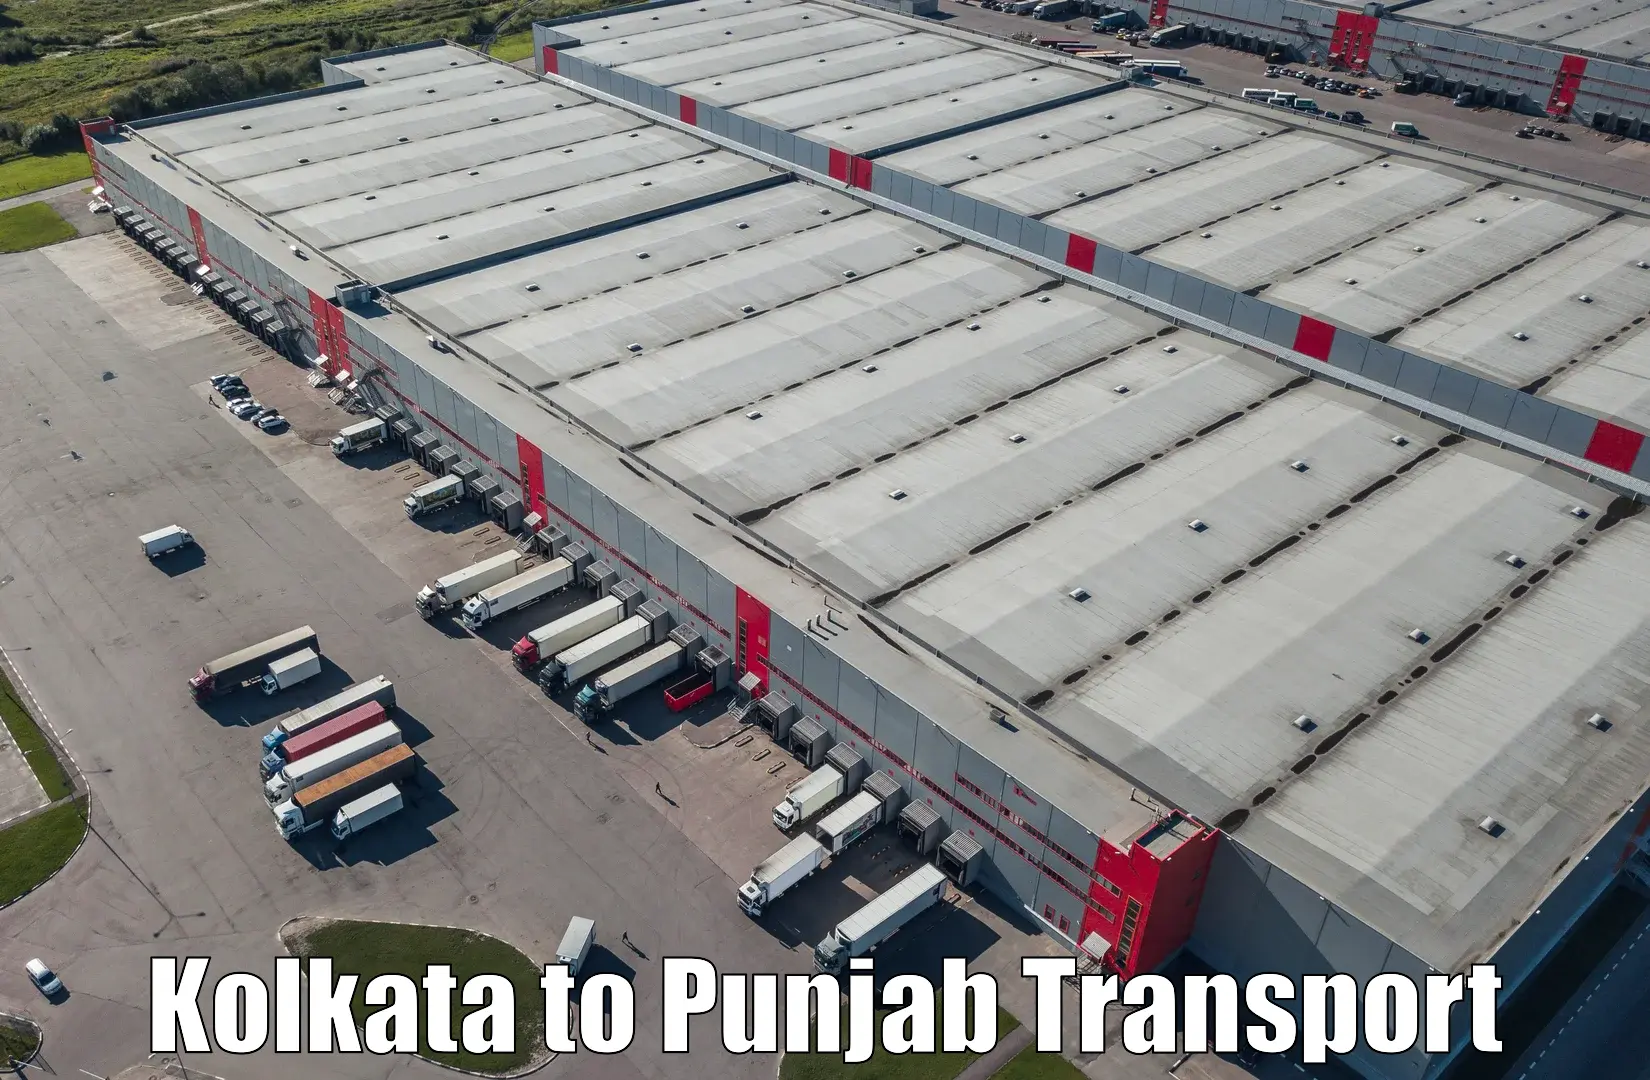 Transport in sharing Kolkata to Fatehgarh Sahib